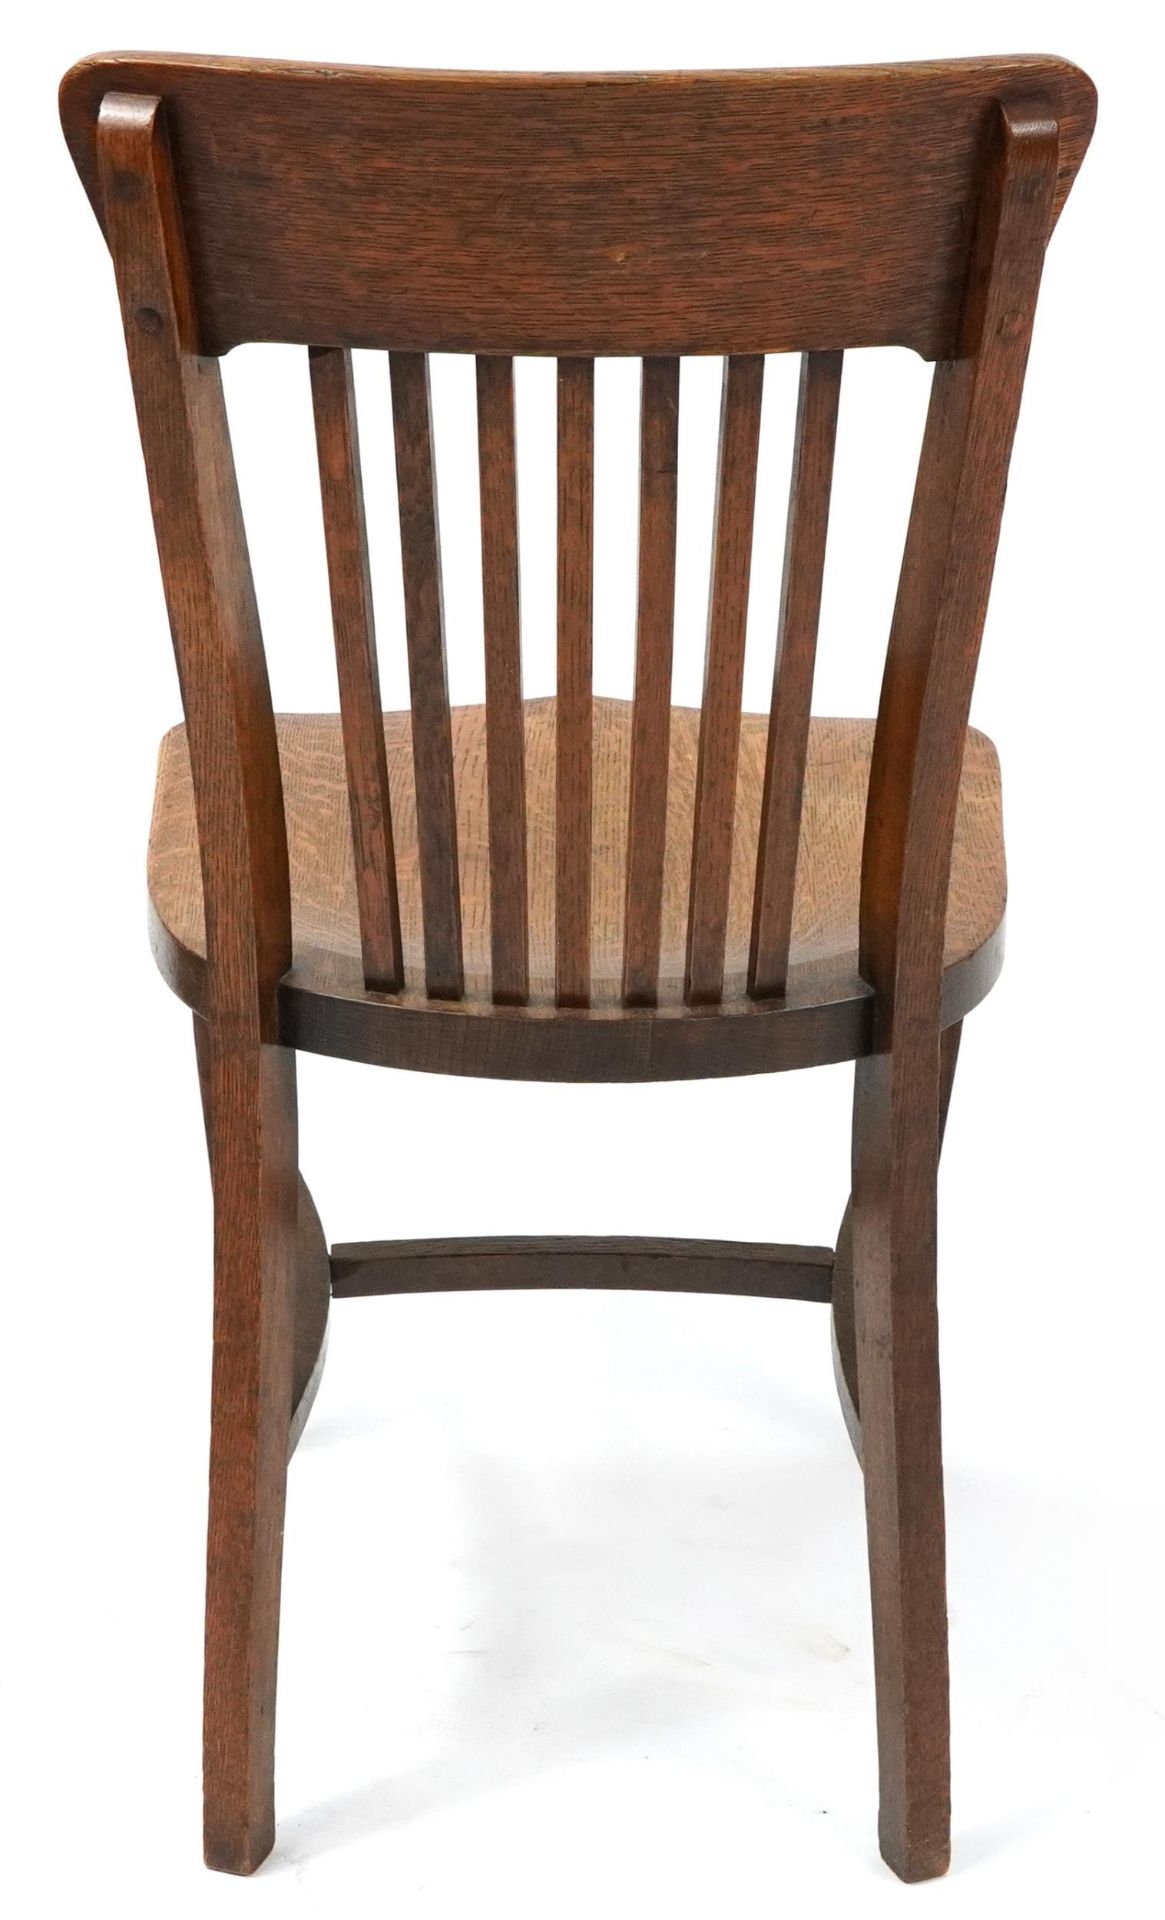 Antique oak chair with H stretcher, 90cm high - Bild 3 aus 3